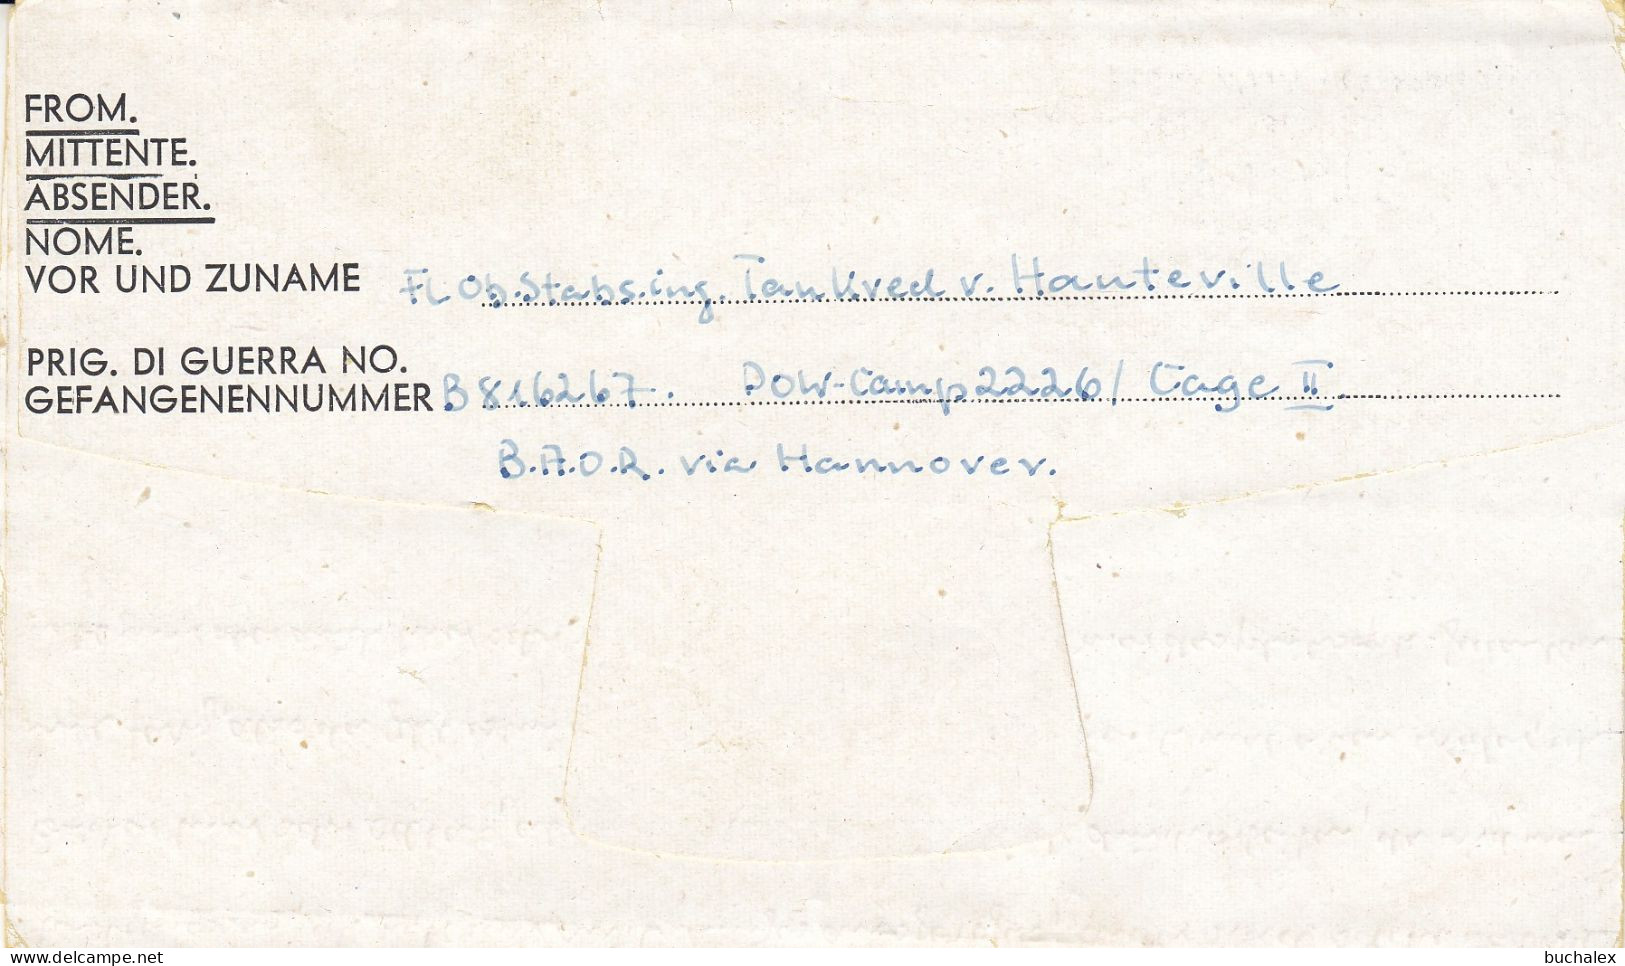 Kriegsgefangenenpost Flieger-Oberstabsingenieur 1946 Von Zedelgem Nach Ladekop - Prisoners Of War Mail